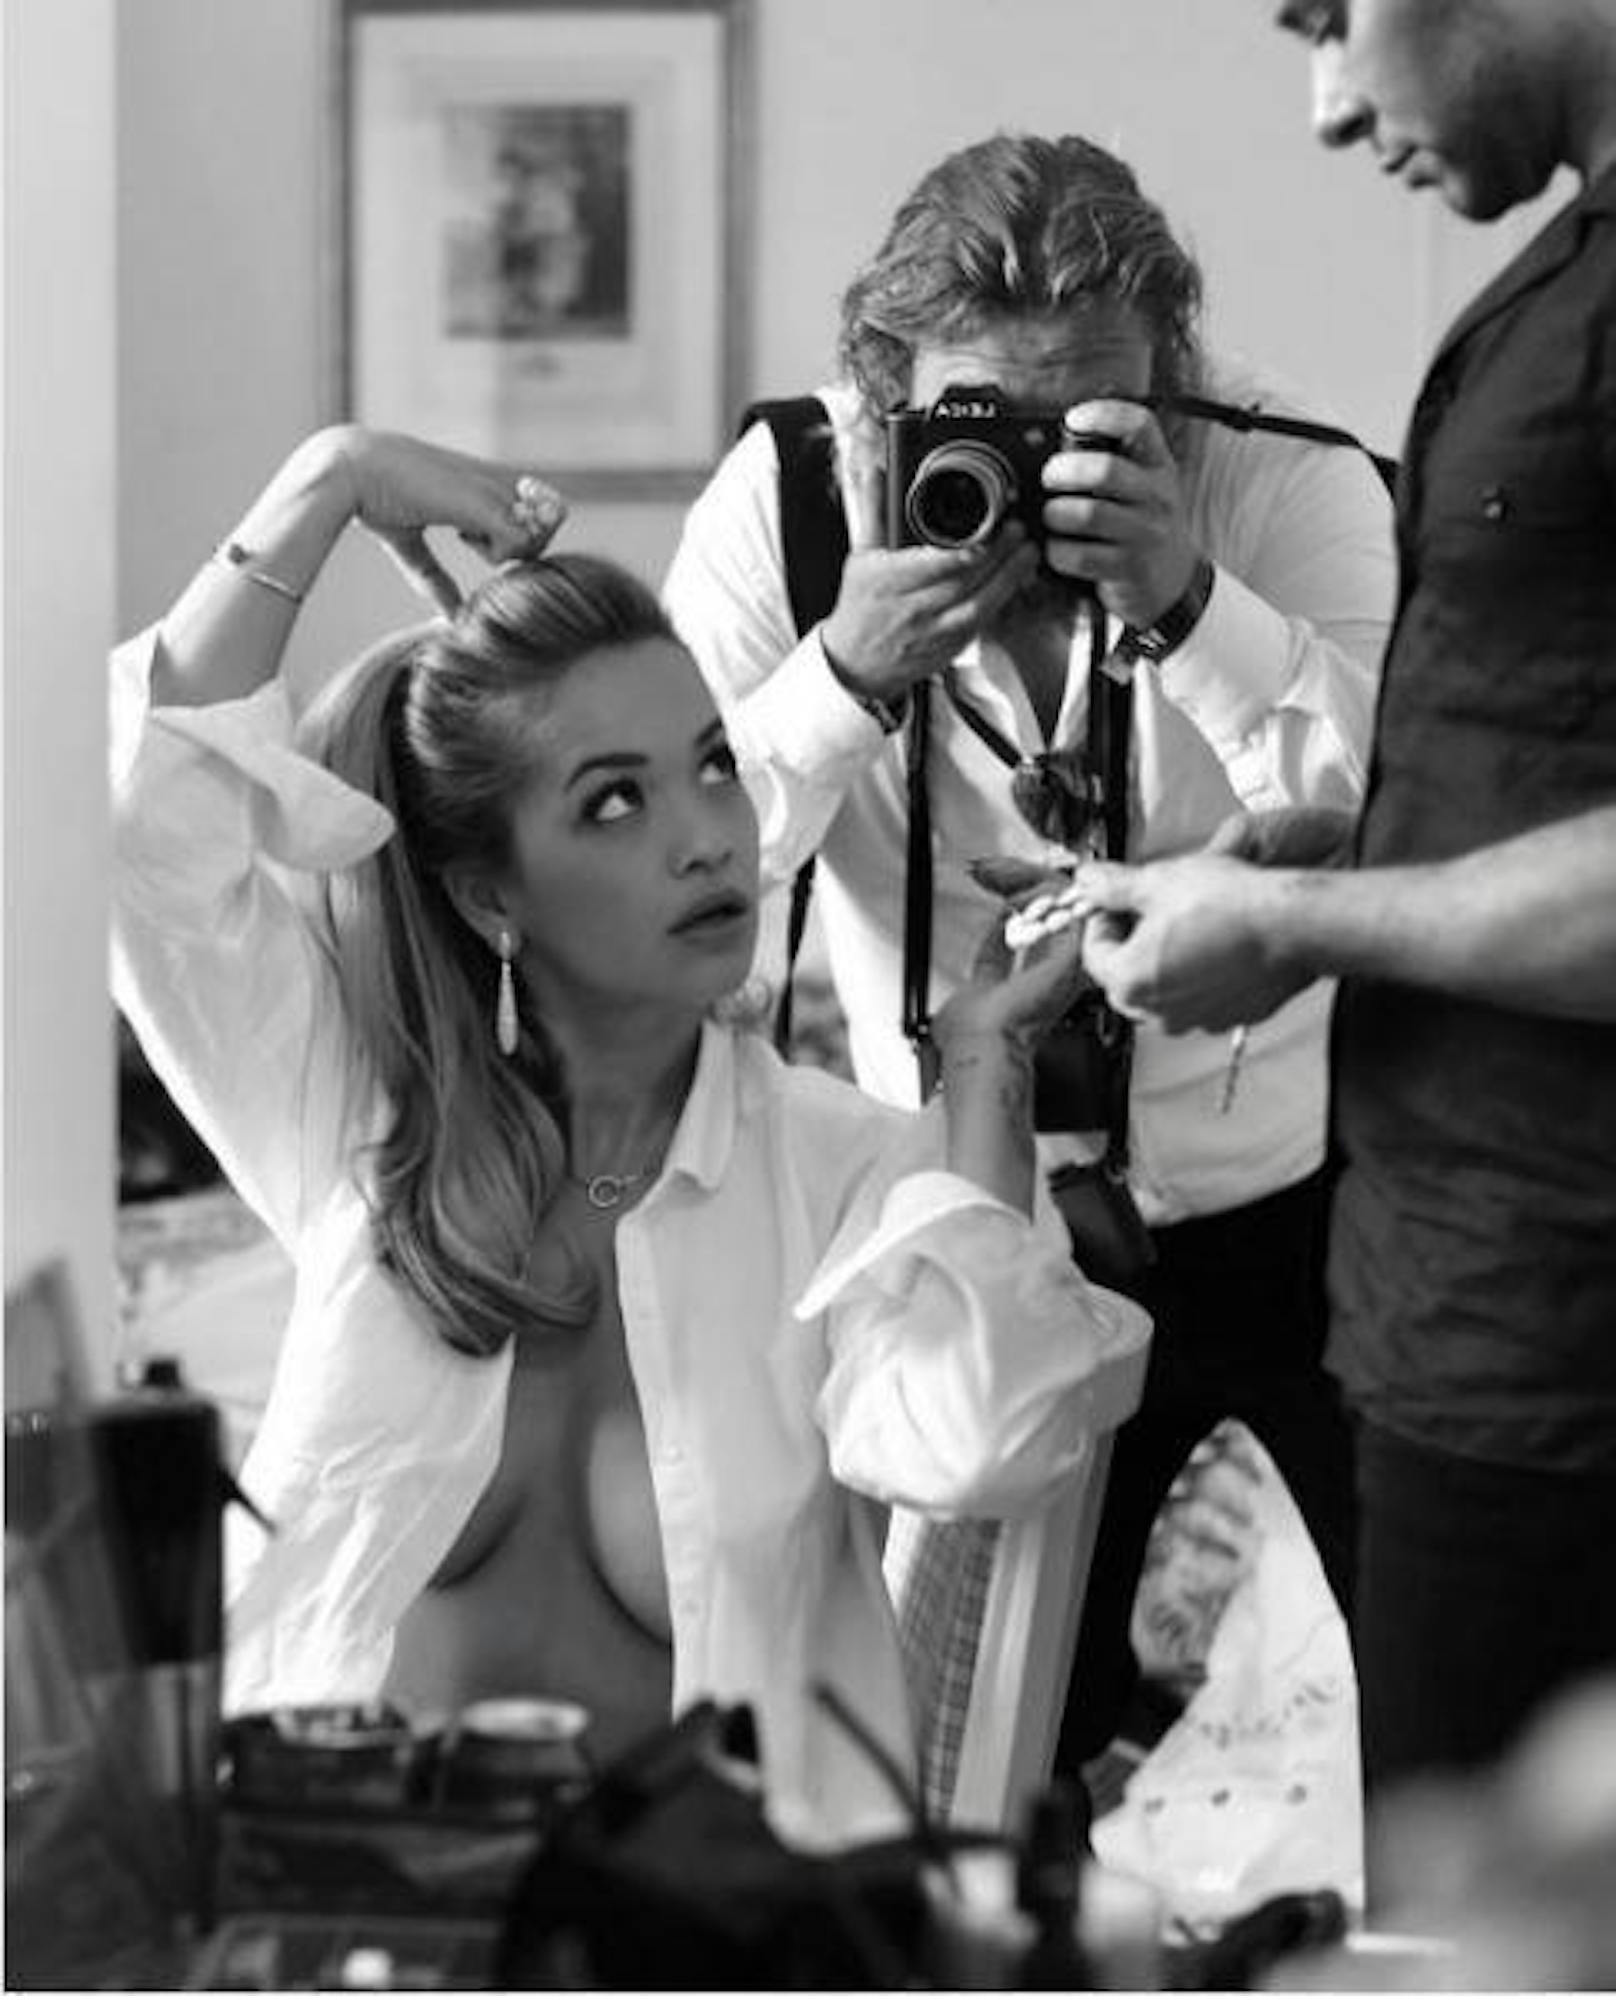 28.05.2017: Popsängerin Rita Ora präsentiert sich Oben-Ohne